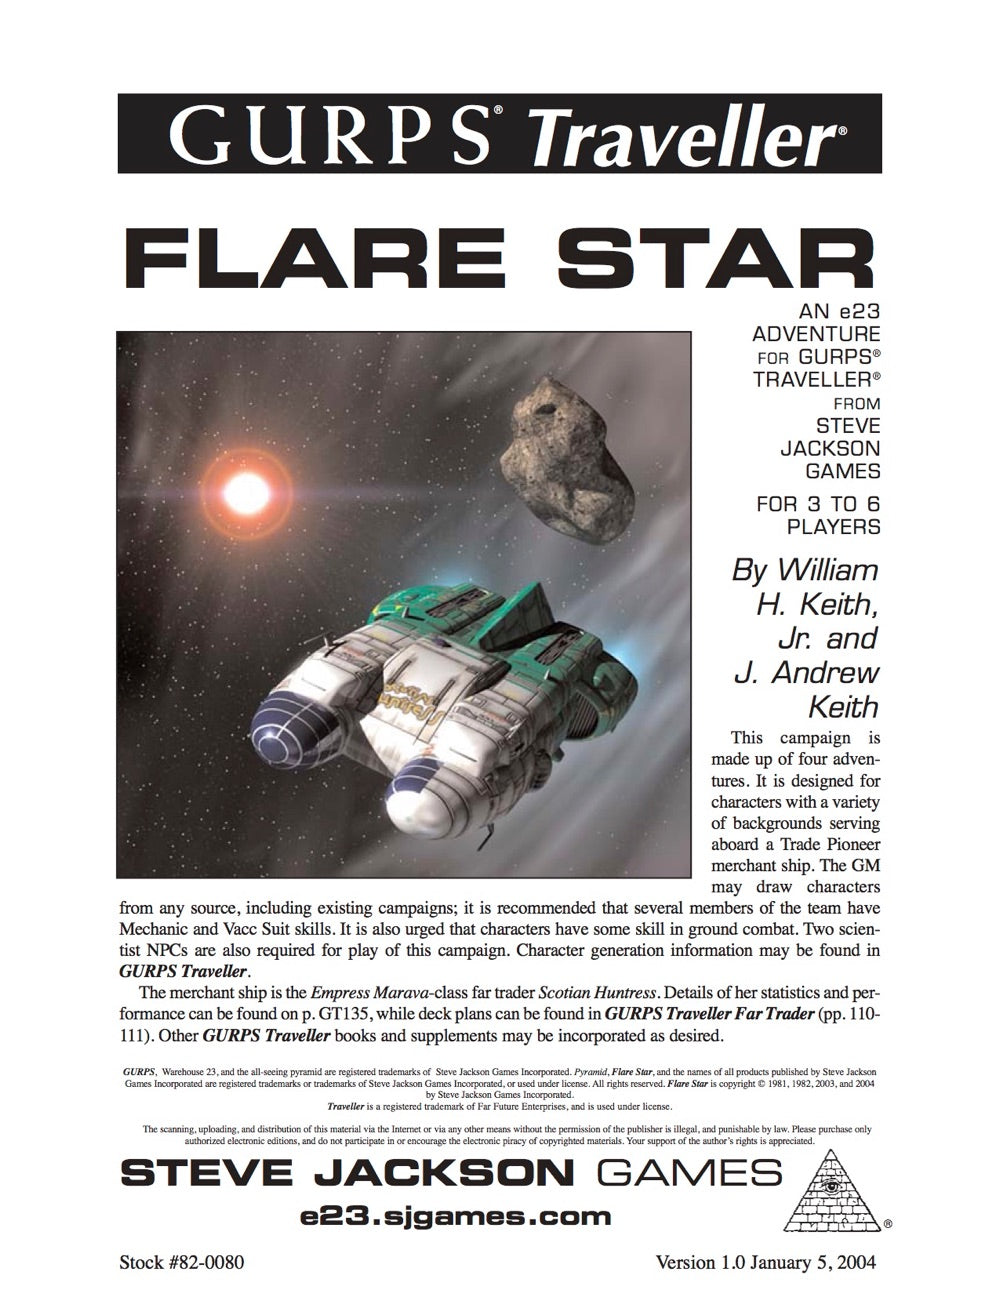 GURPS Traveller: Flare Star